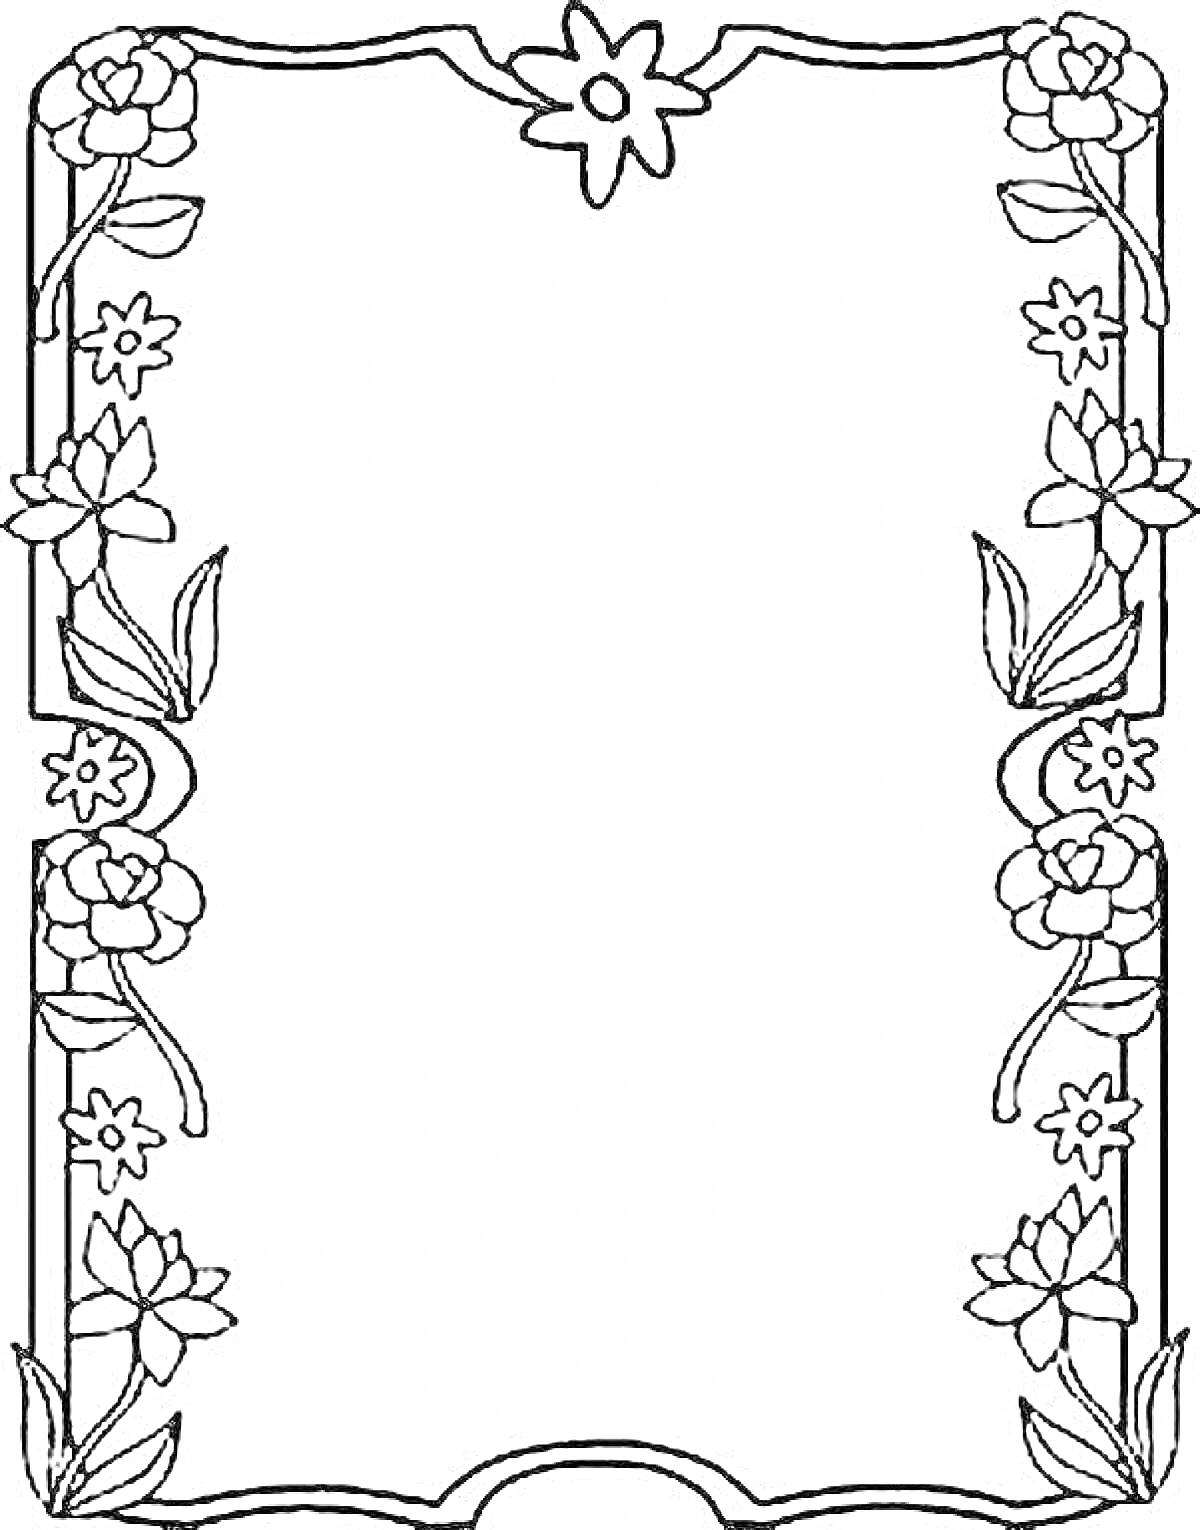 Раскраска Рамка с цветочным узором, включающим стилизованные цветы в верхней, боковых и нижней частях рамки